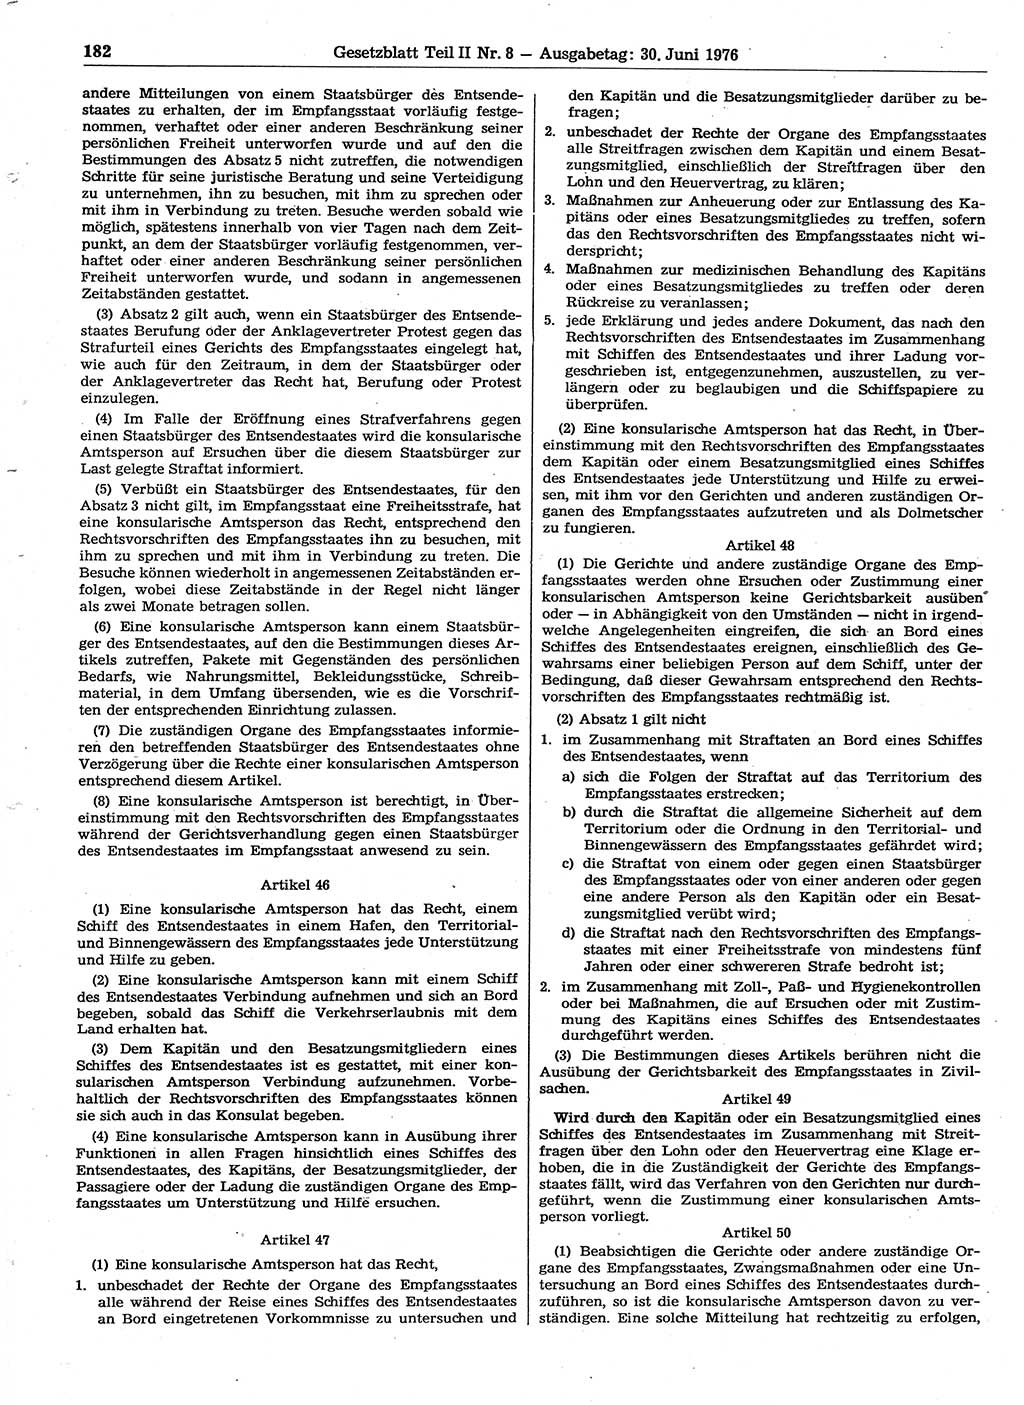 Gesetzblatt (GBl.) der Deutschen Demokratischen Republik (DDR) Teil ⅠⅠ 1976, Seite 182 (GBl. DDR ⅠⅠ 1976, S. 182)